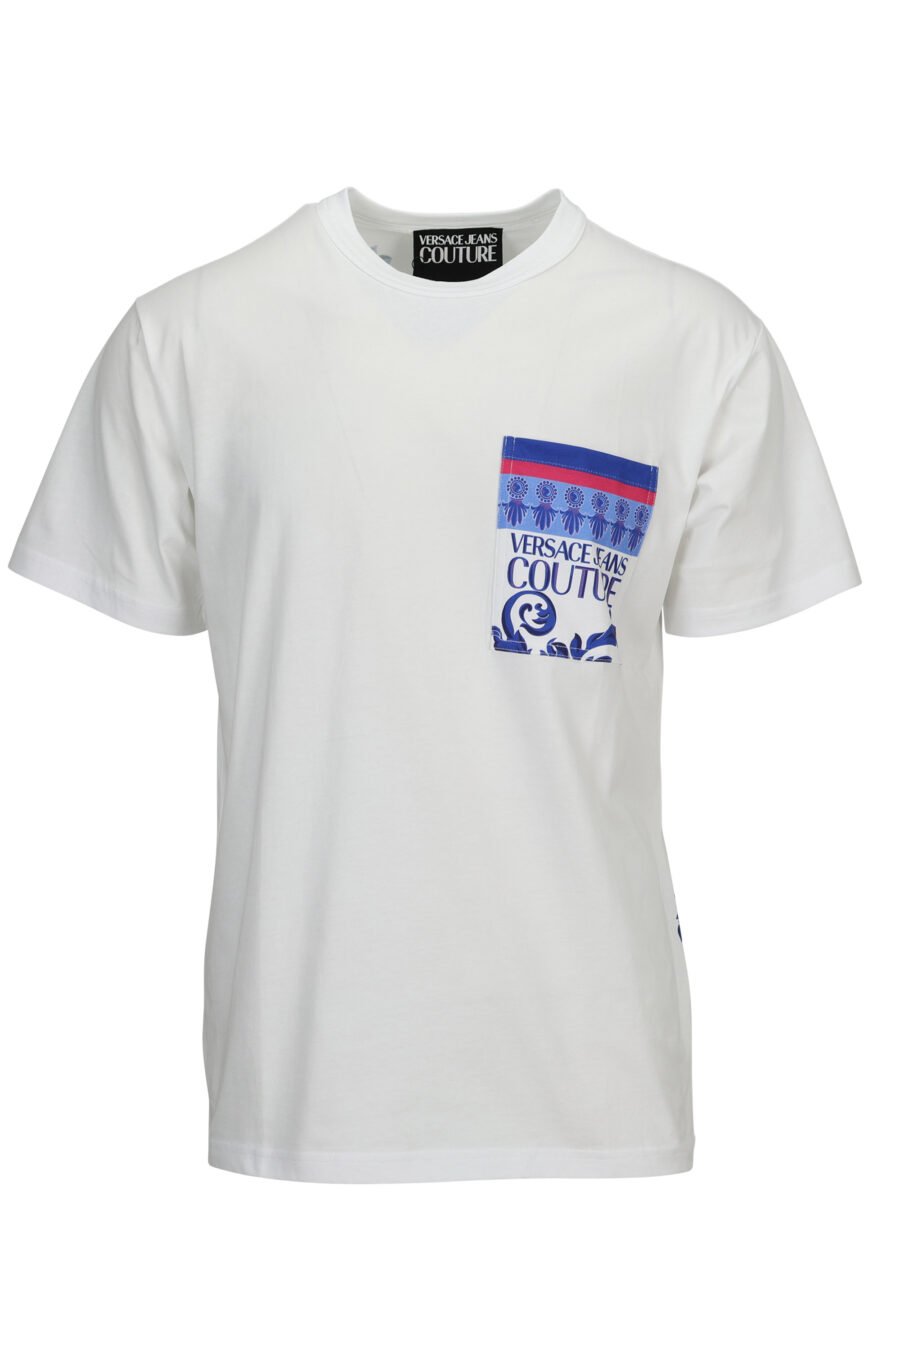 Camiseta blanca con bolsillo logo barroco azul - 8052019611250